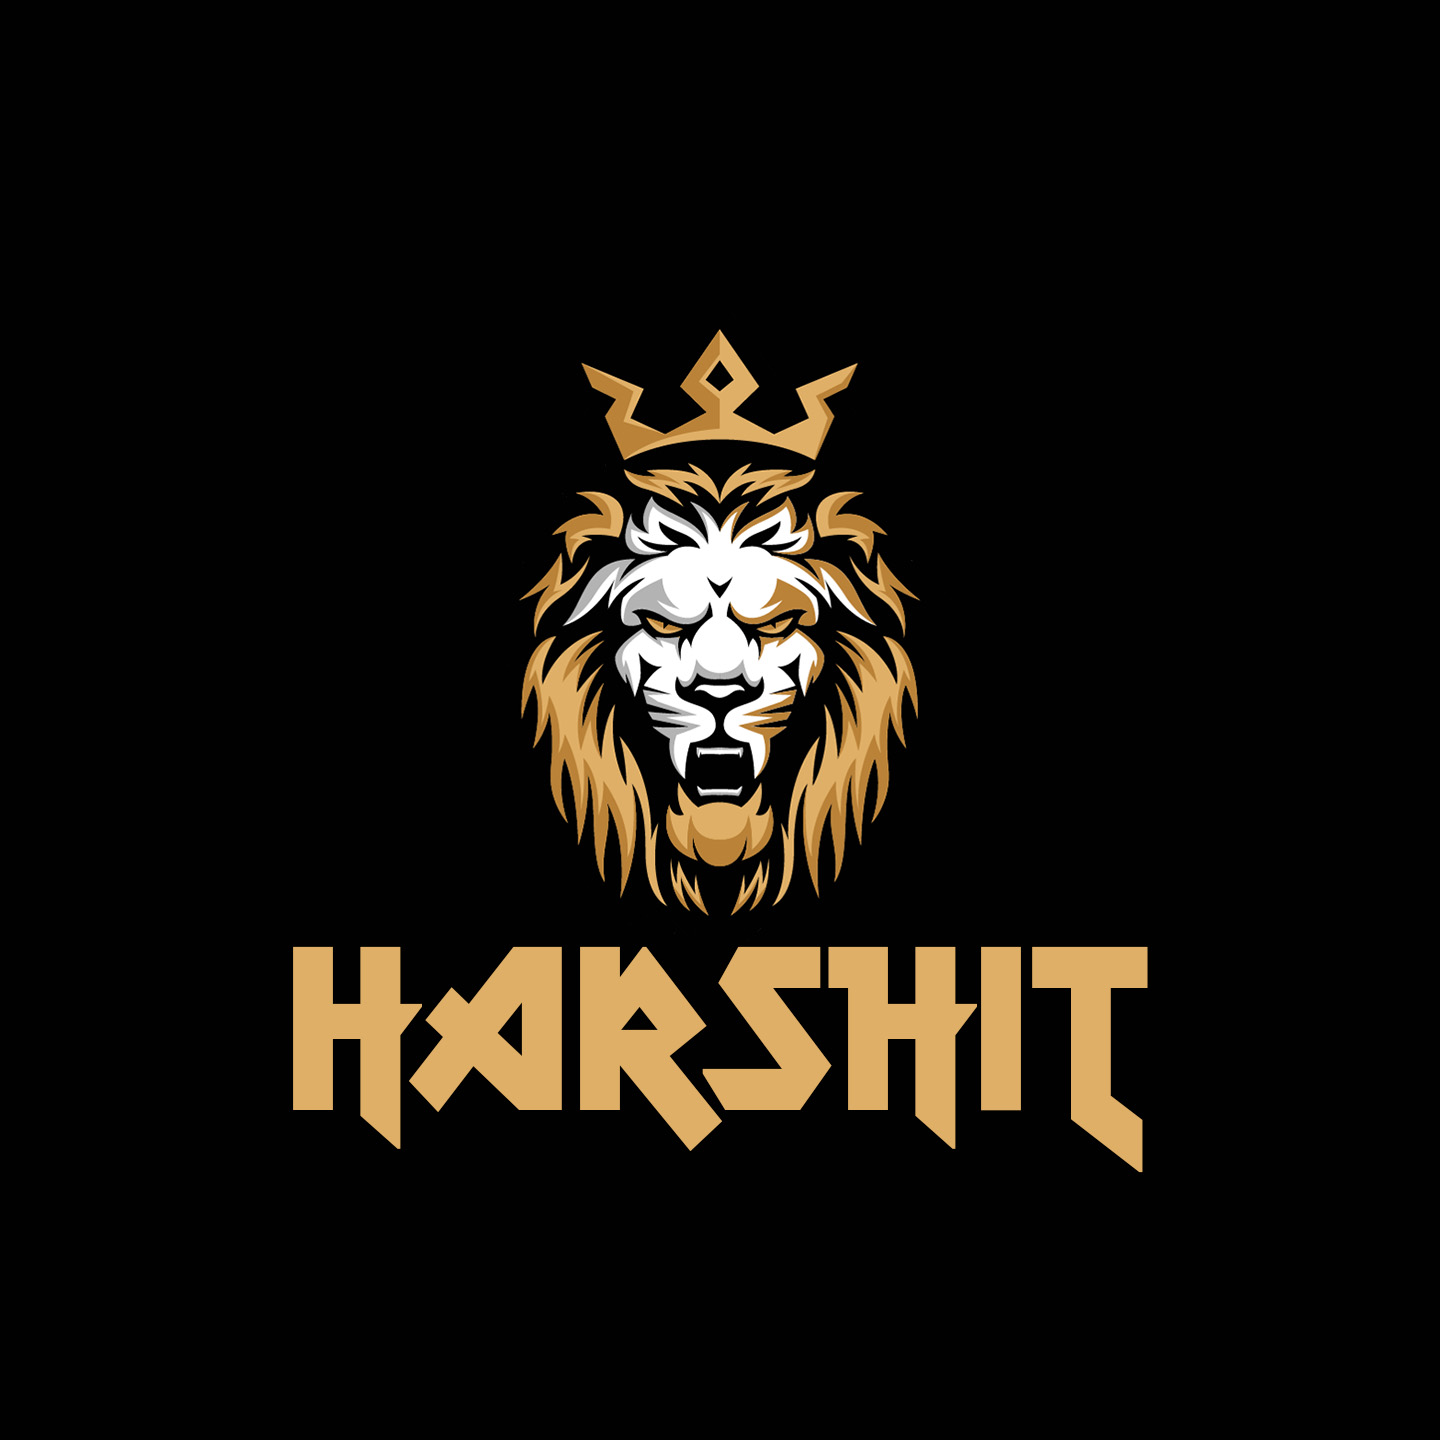 Harshit Gold Logo Reveal - YouTube